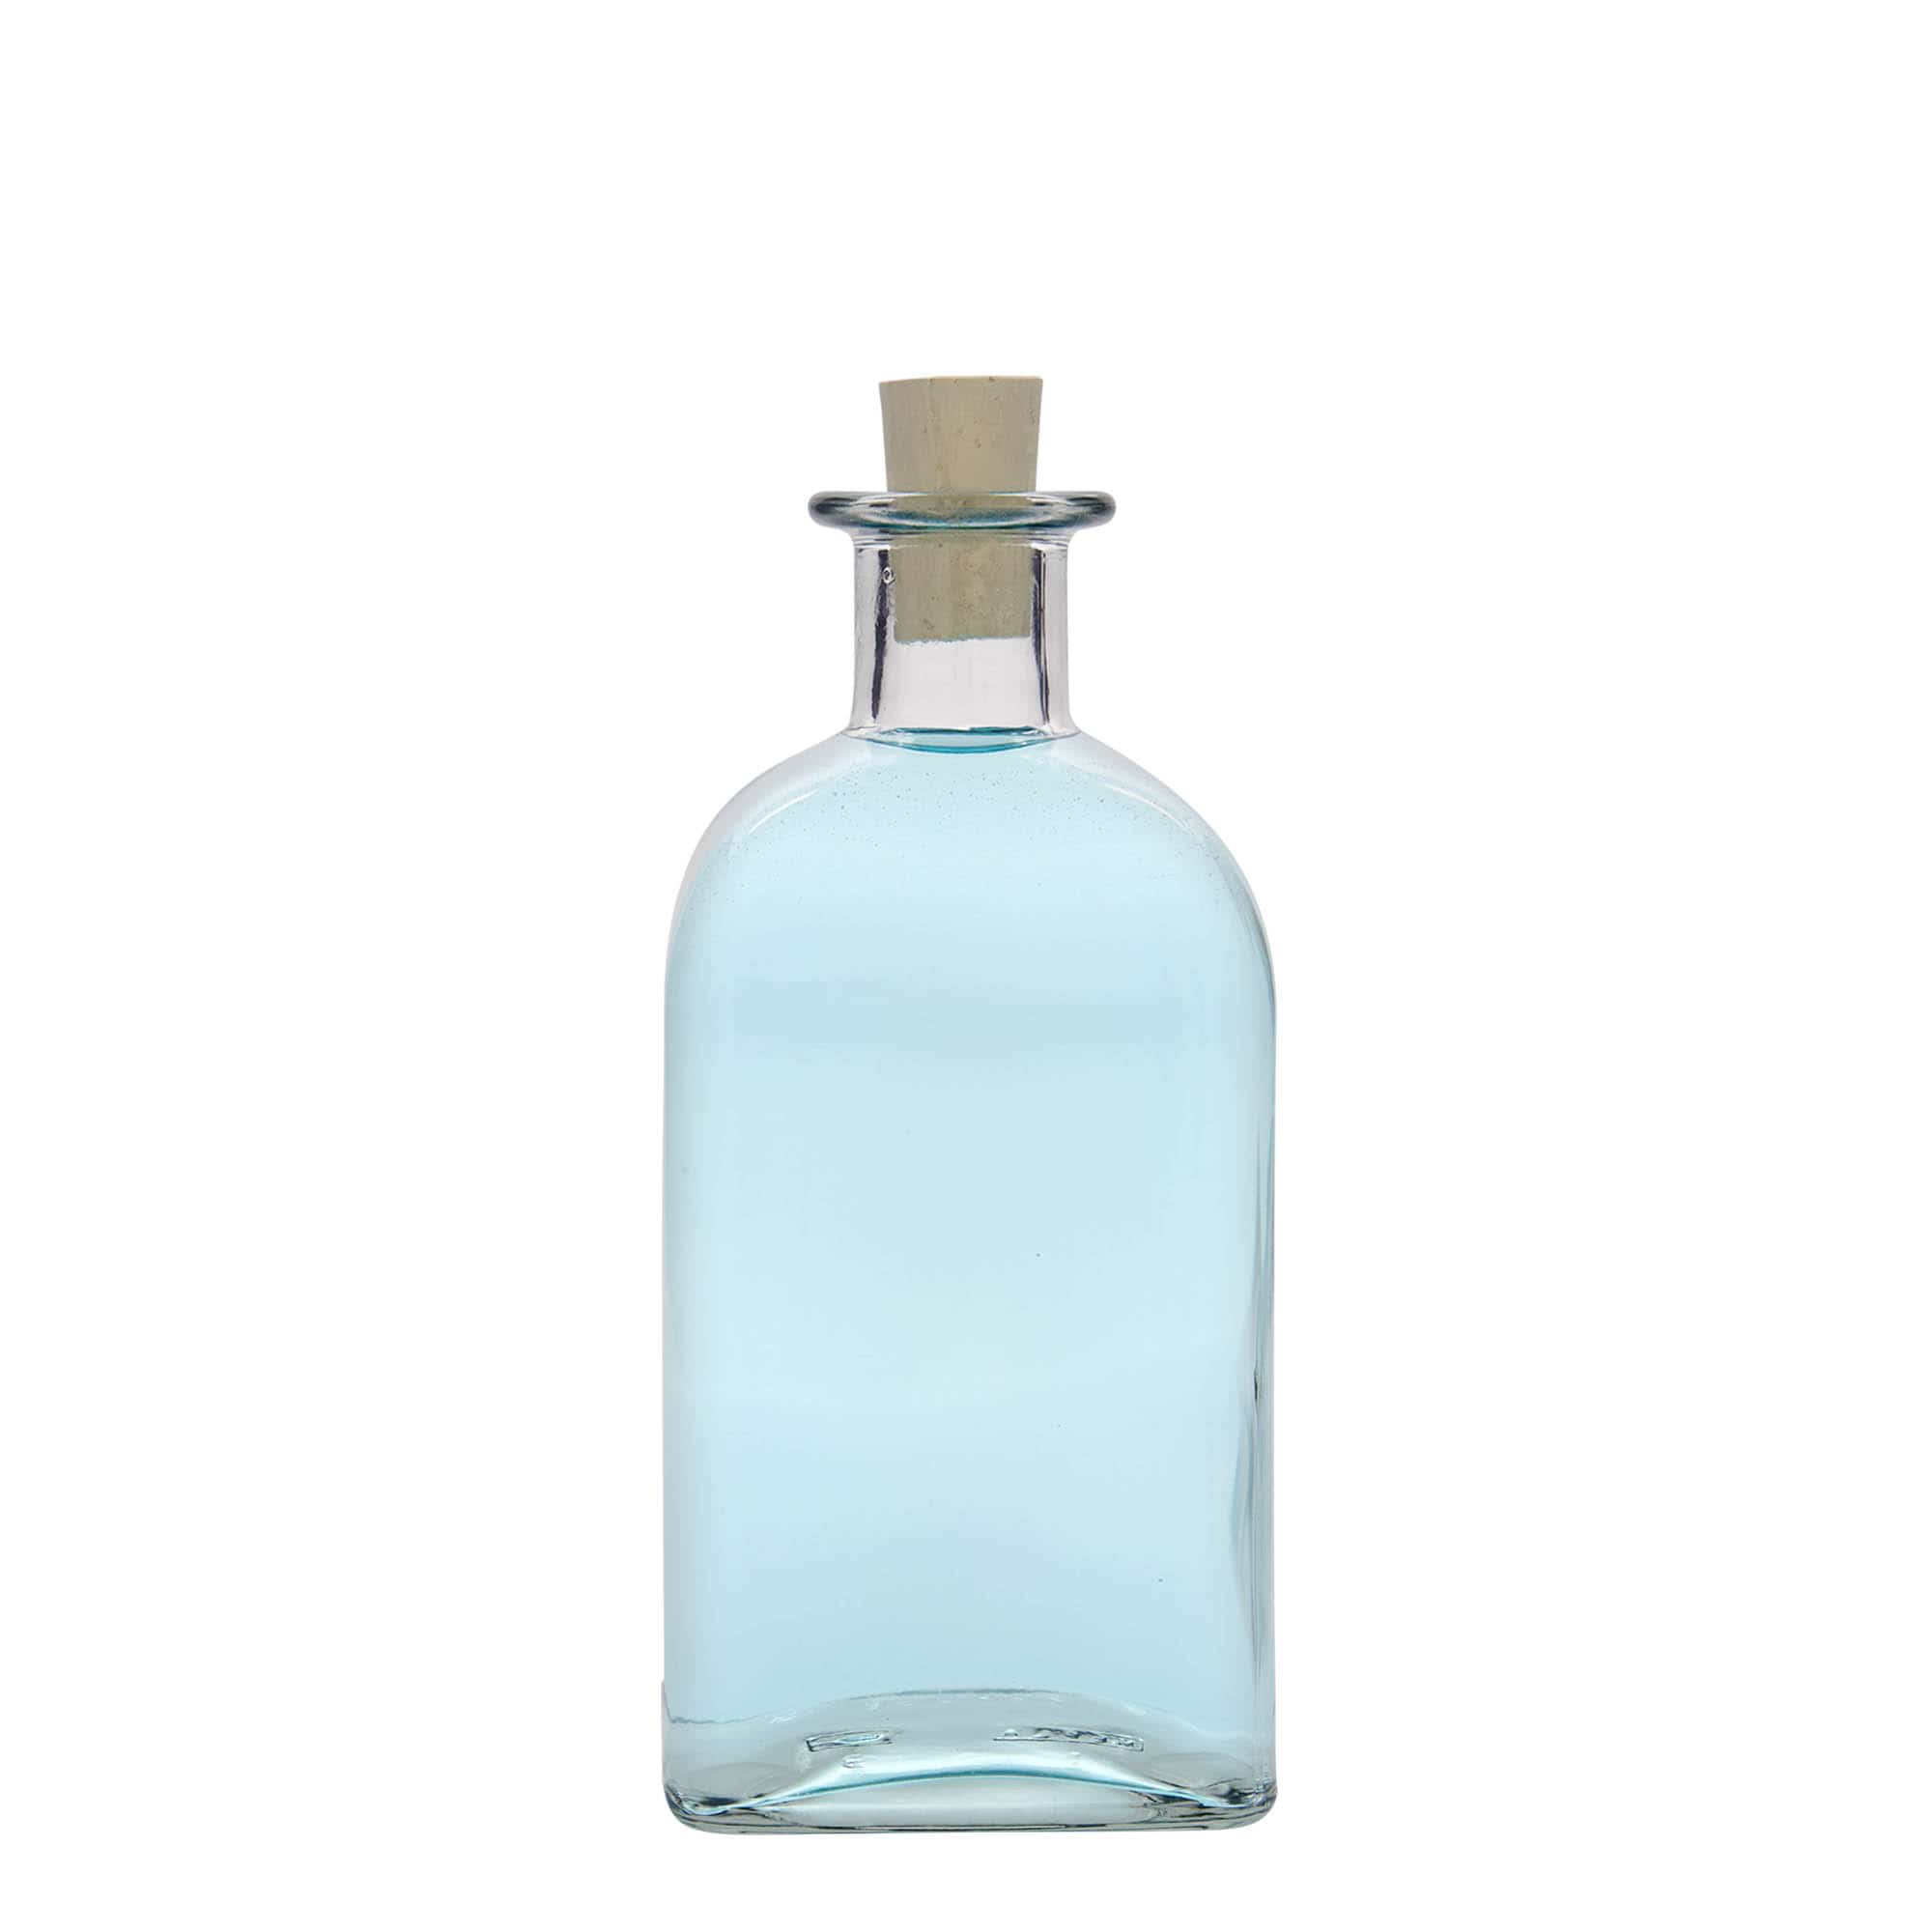 Botella de vidrio de farmacia 'Carré' de 500 ml, cuadrada, boca: corcho